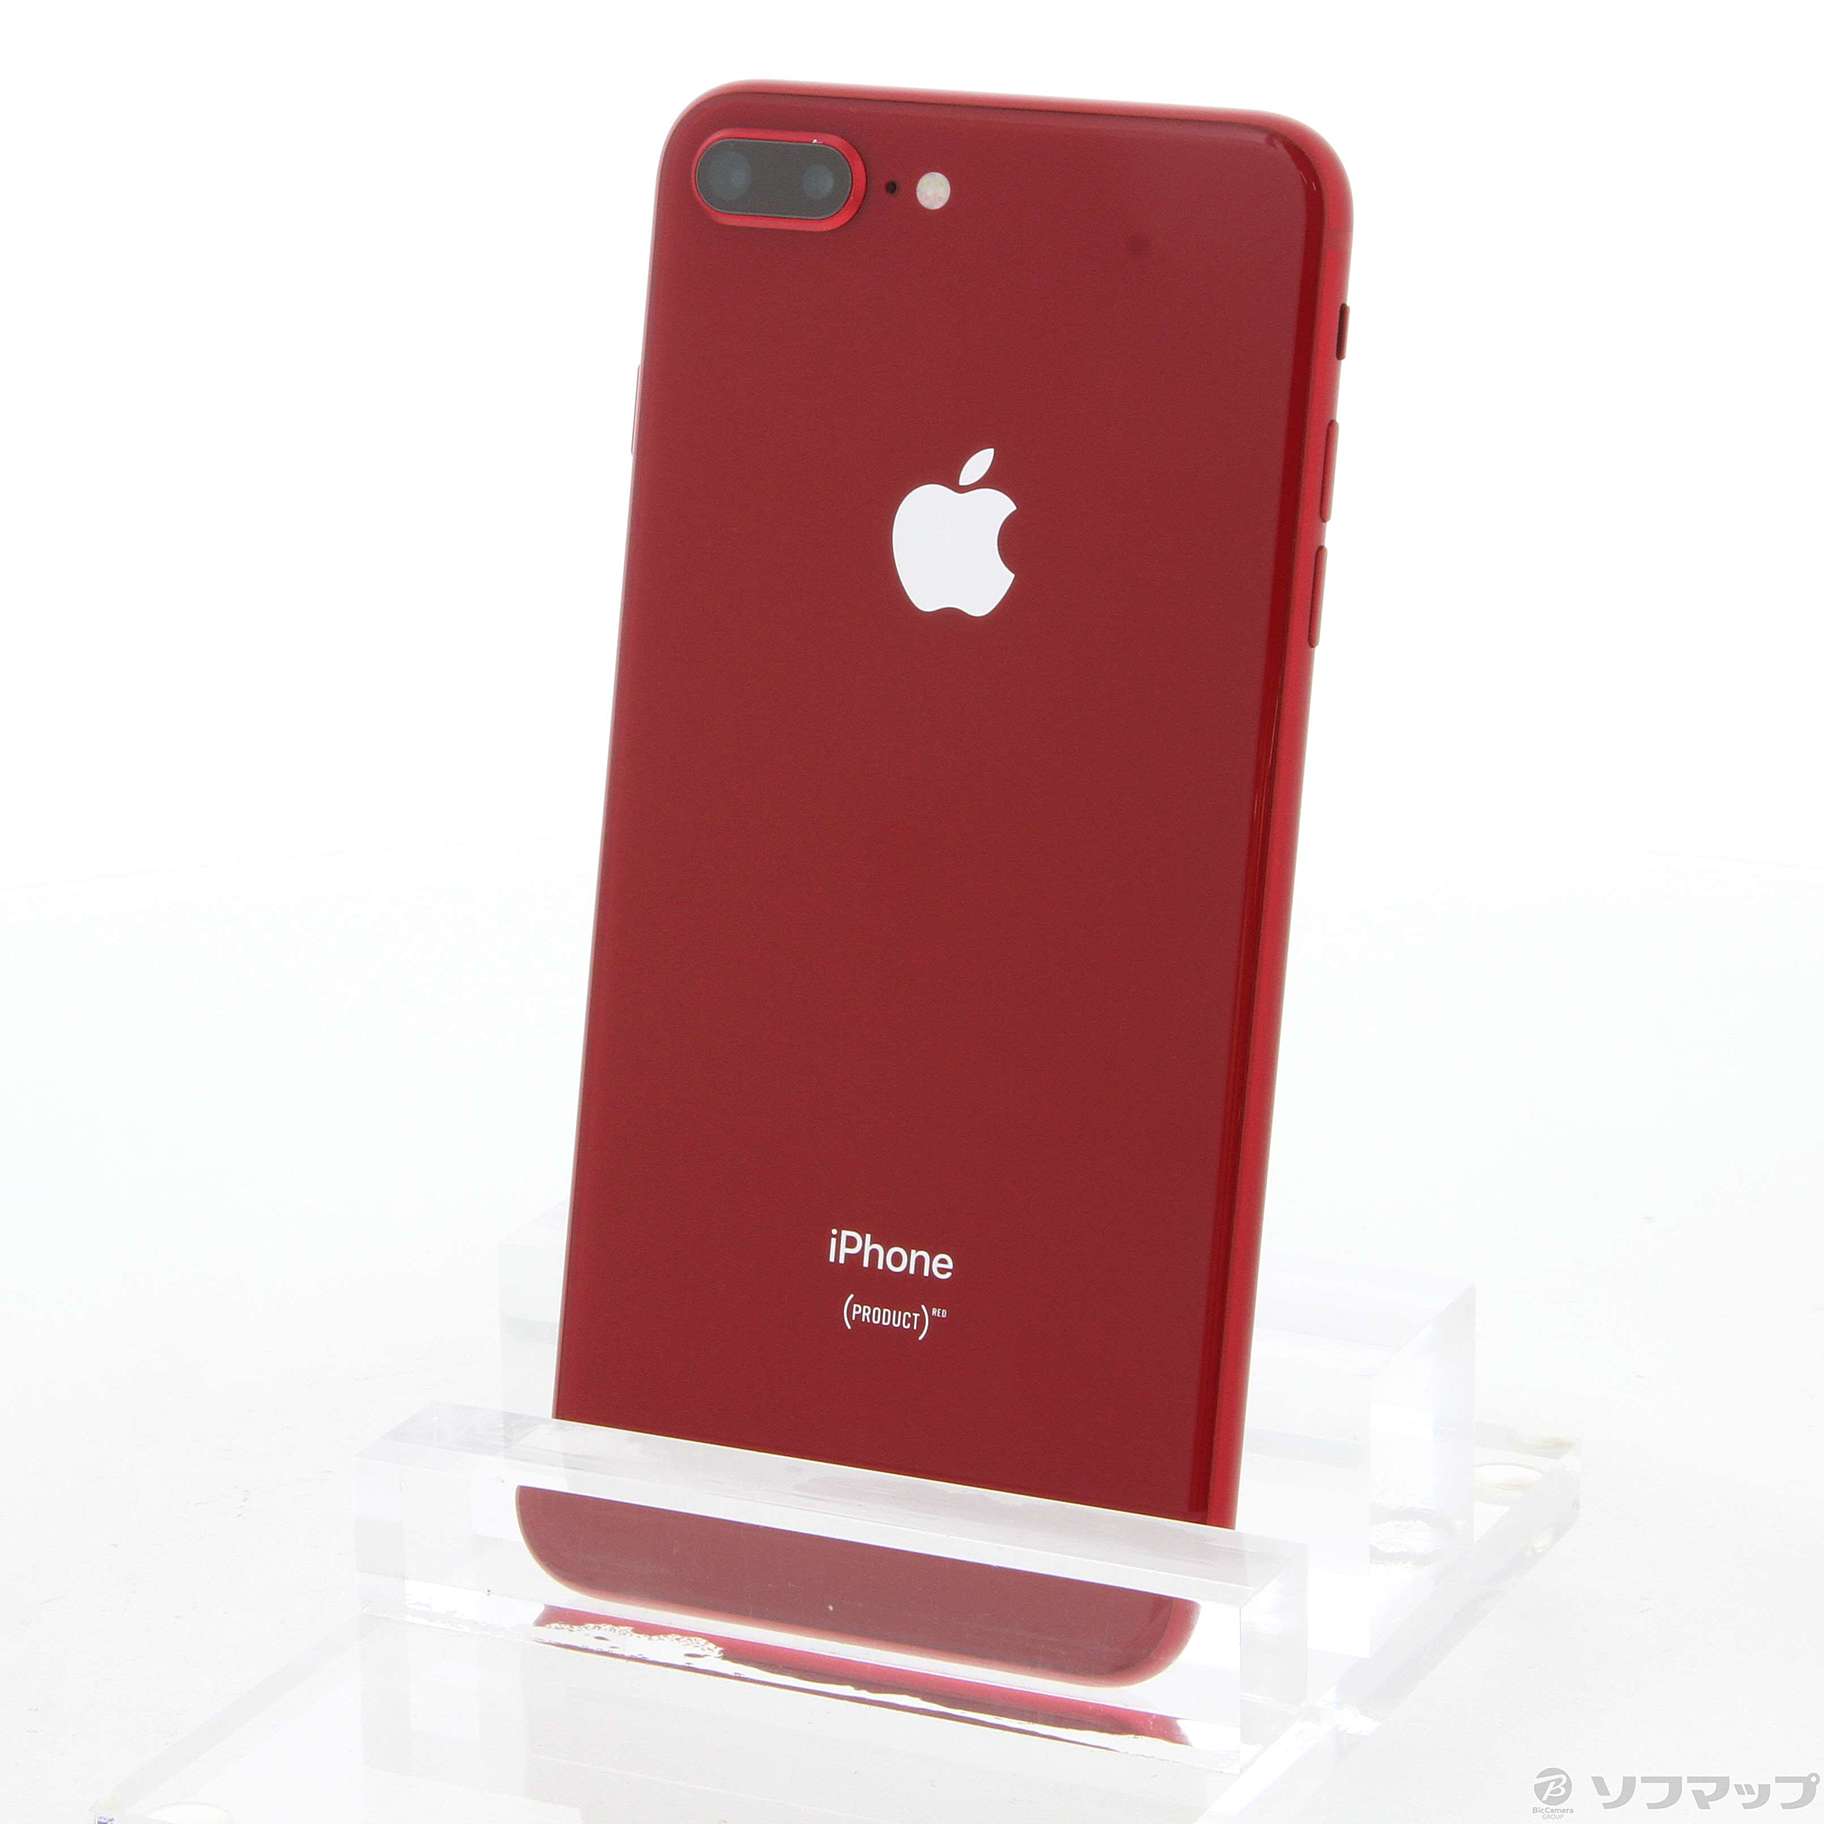 iPhone 8 Plus プロダクトレッド 64 GB SIMフリー64GBカラーレッド元キャリア